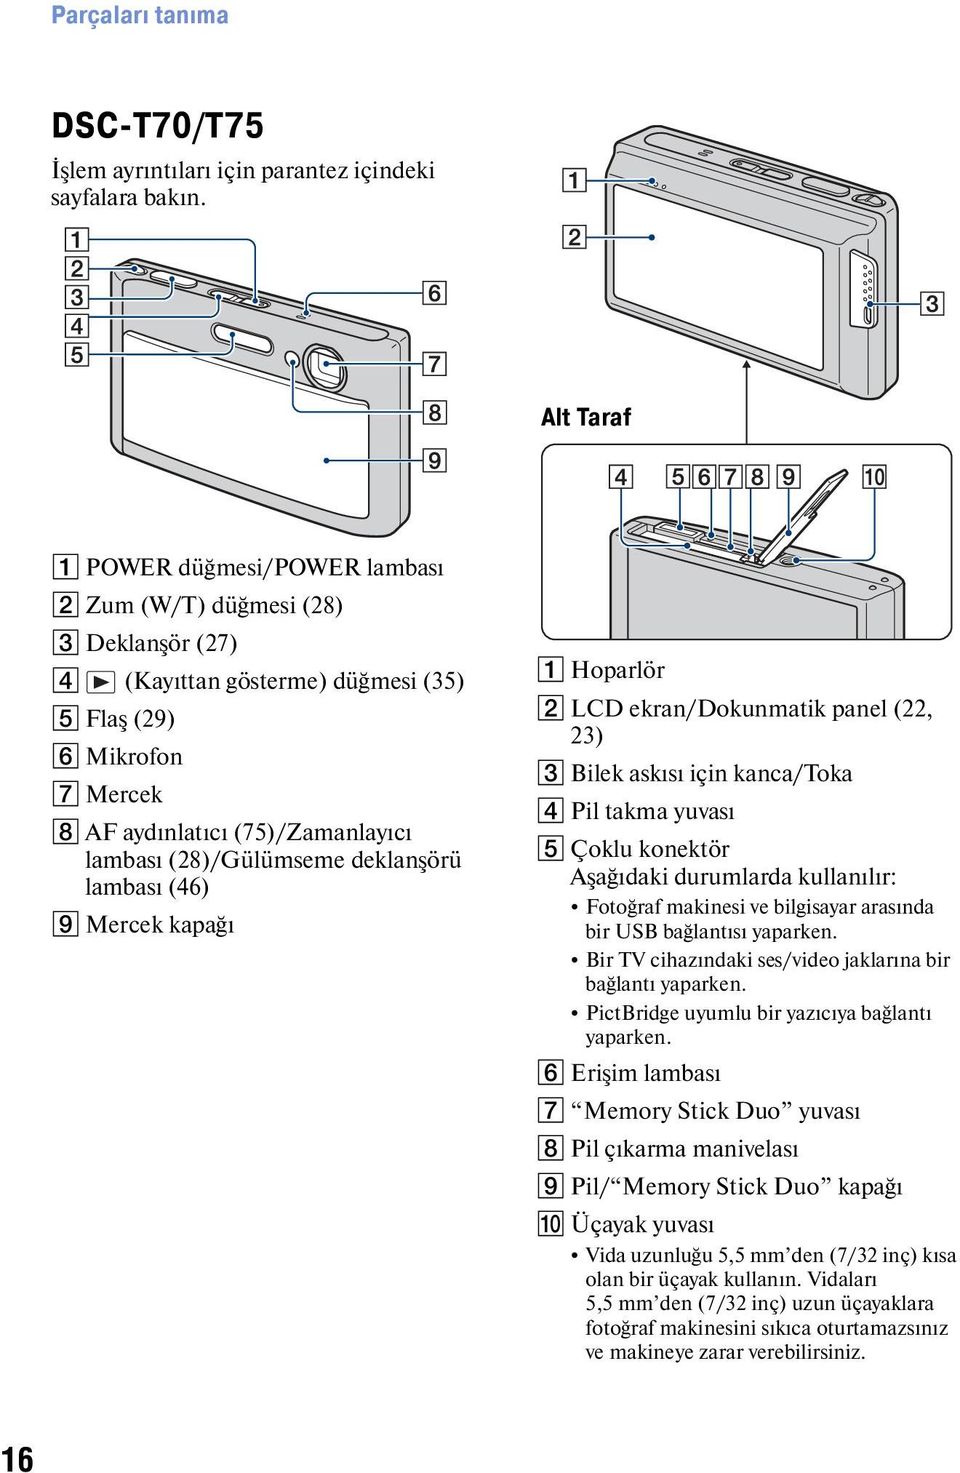 (28)/Gülümseme deklanşörü lambası (46) I Mercek kapağı A Hoparlör B LCD ekran/dokunmatik panel (22, 23) C Bilek askısı için kanca/toka D Pil takma yuvası E Çoklu konektör Aşağıdaki durumlarda